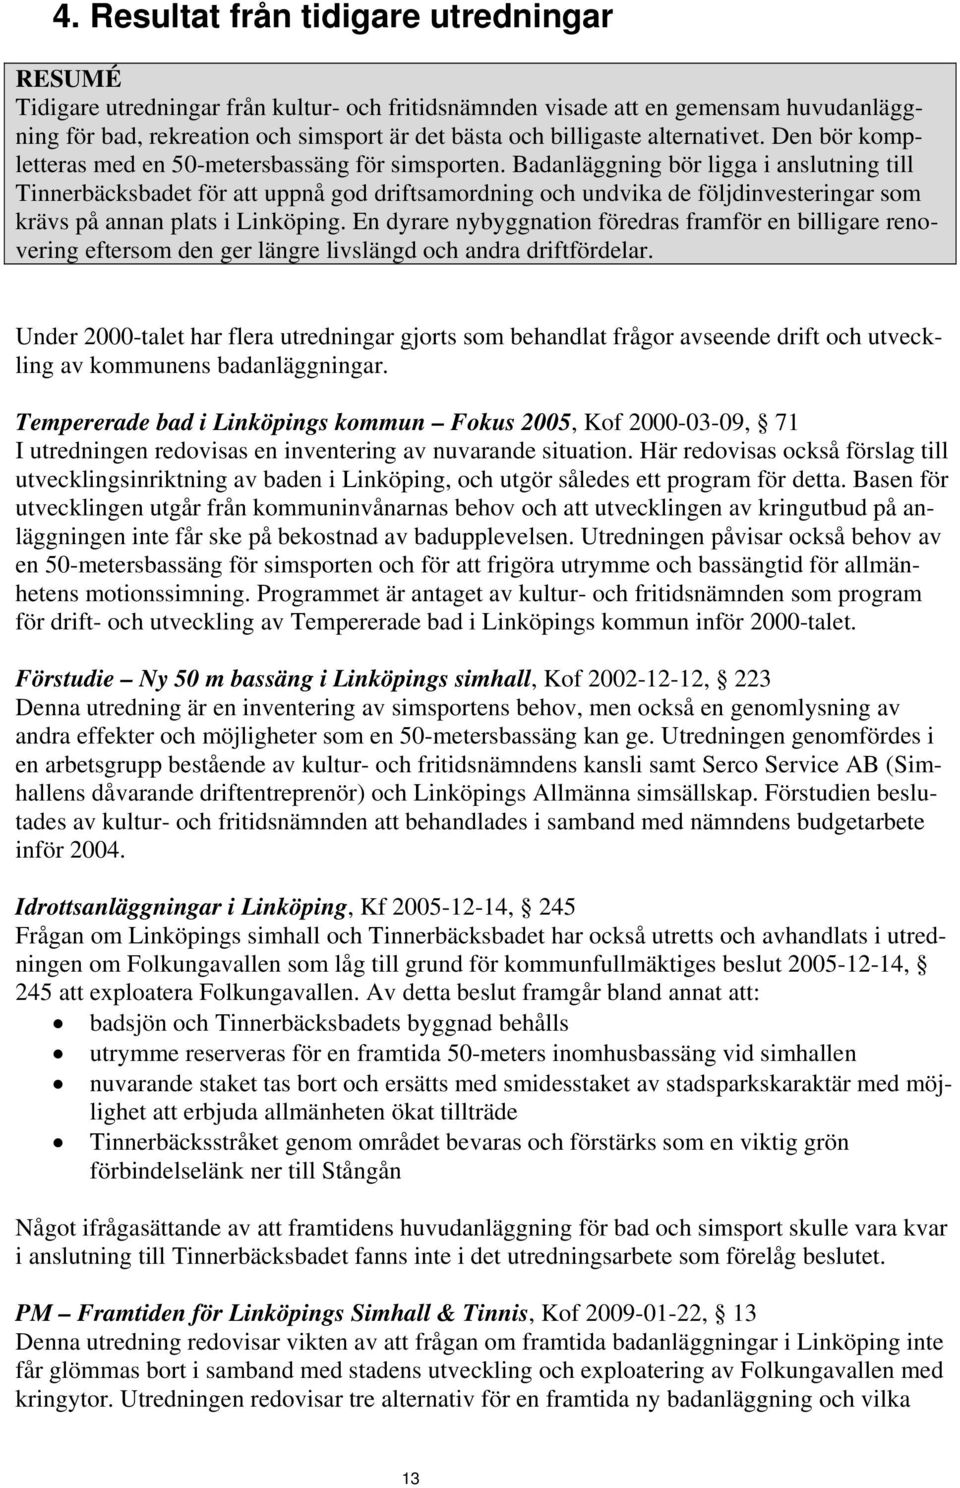 Badanläggning bör ligga i anslutning till Tinnerbäcksbadet för att uppnå god driftsamordning och undvika de följdinvesteringar som krävs på annan plats i Linköping.